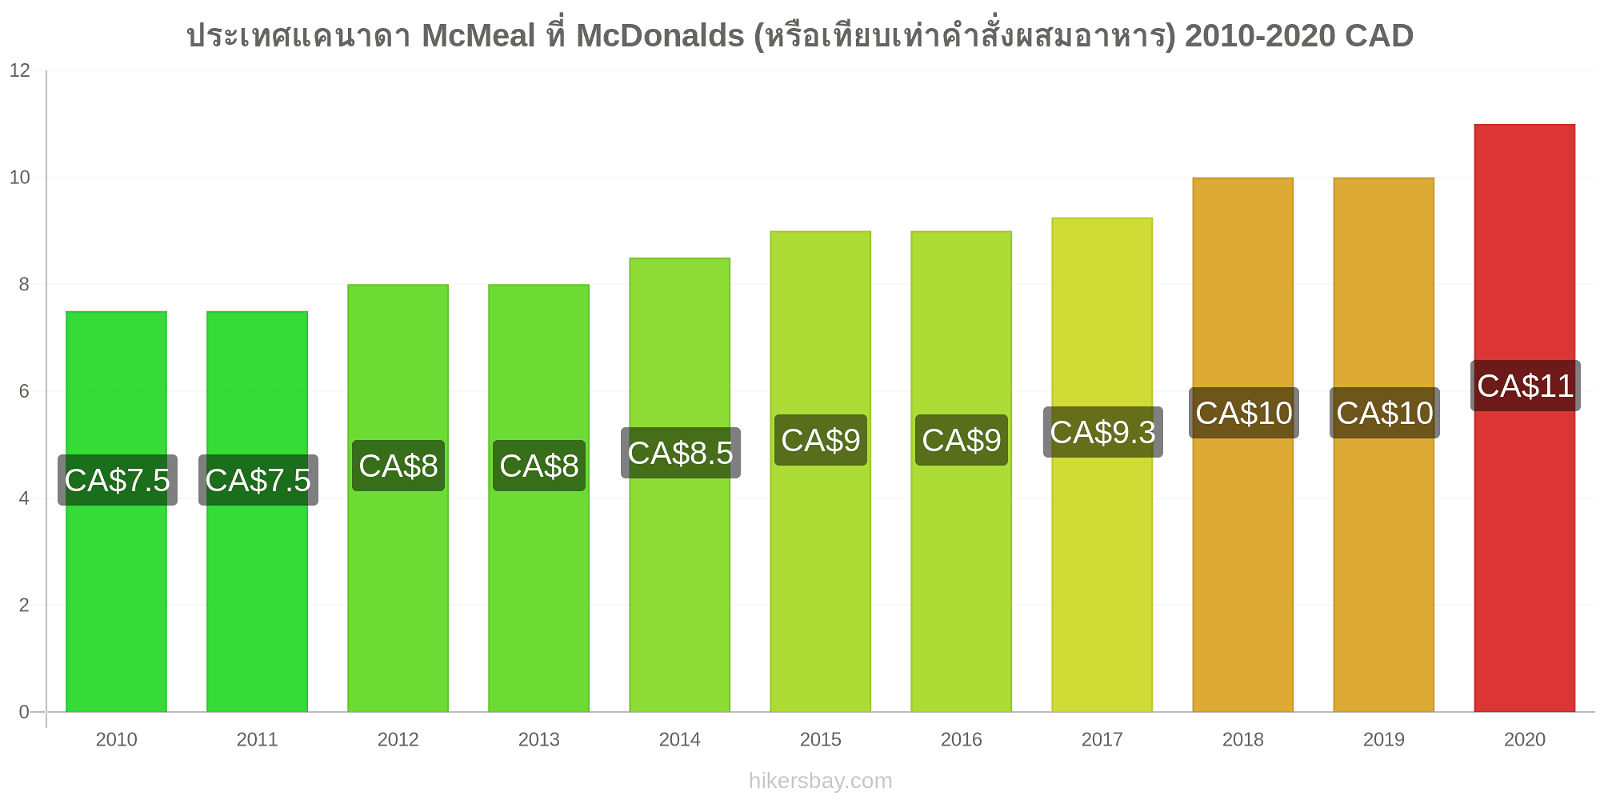 ประเทศแคนาดา การเปลี่ยนแปลงราคา McMeal ที่ McDonalds (หรือเทียบเท่าคำสั่งผสมอาหาร) hikersbay.com